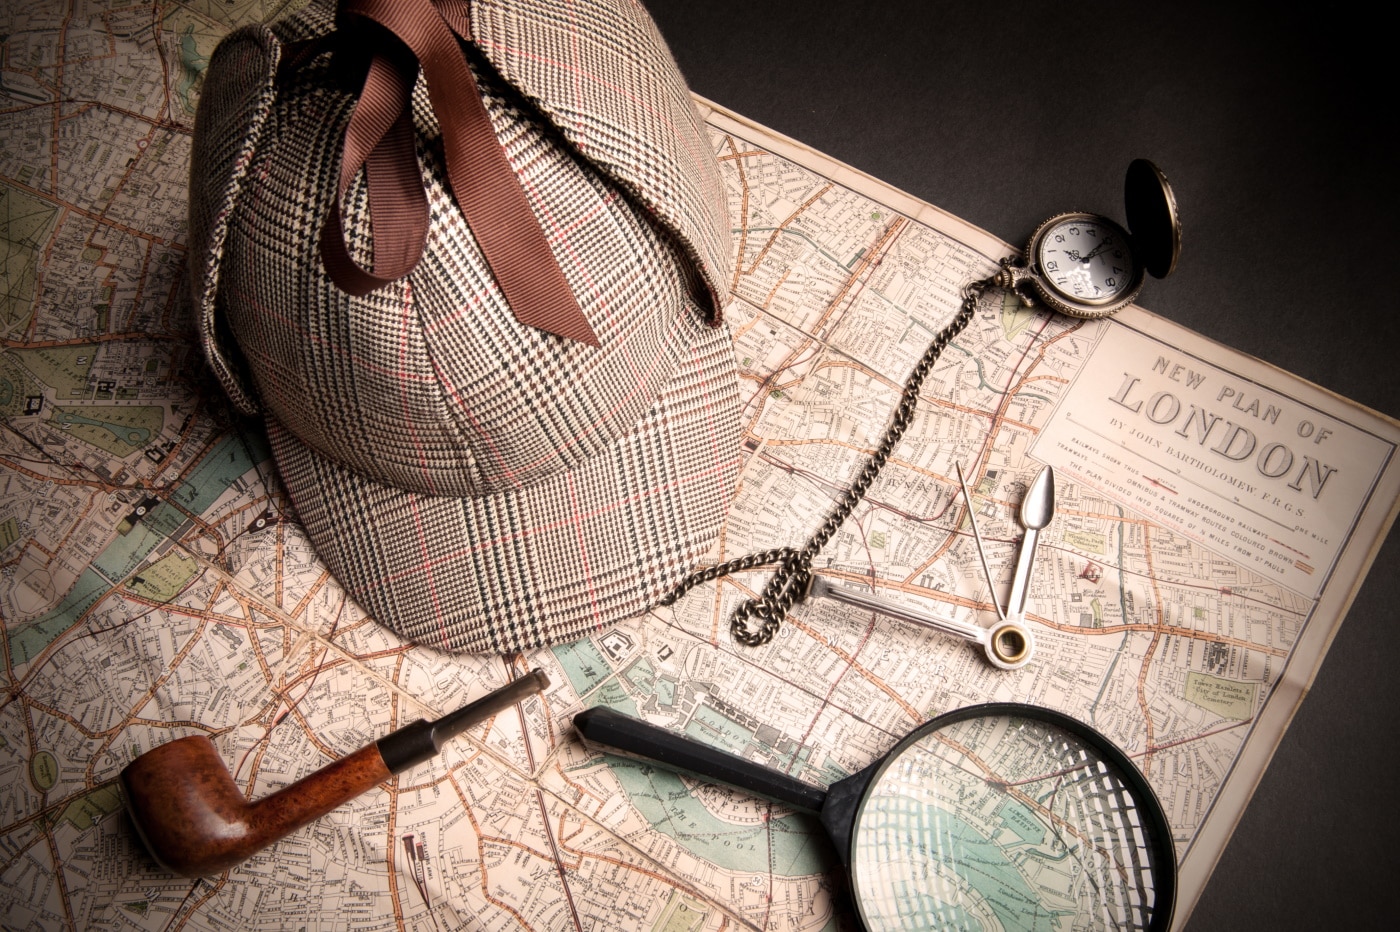 Sherlock Homes Mütze, Lupe, Uhr und weitere Utensilien auf einer Karte von London